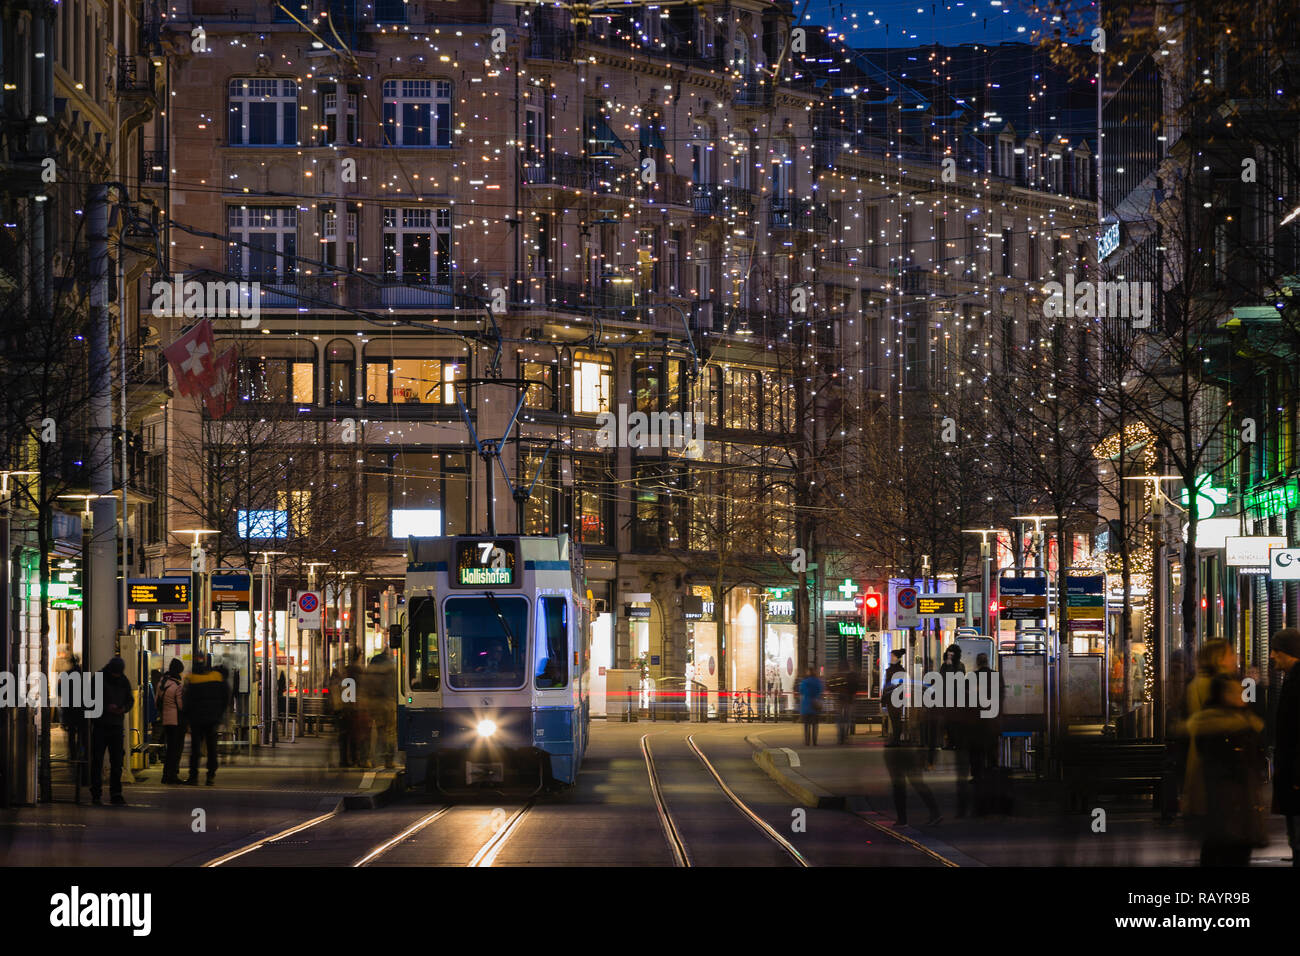 Weihnachtsbeleuchtung an der Bahnhofstrasse, Zürich, Schweiz  Stockfotografie - Alamy